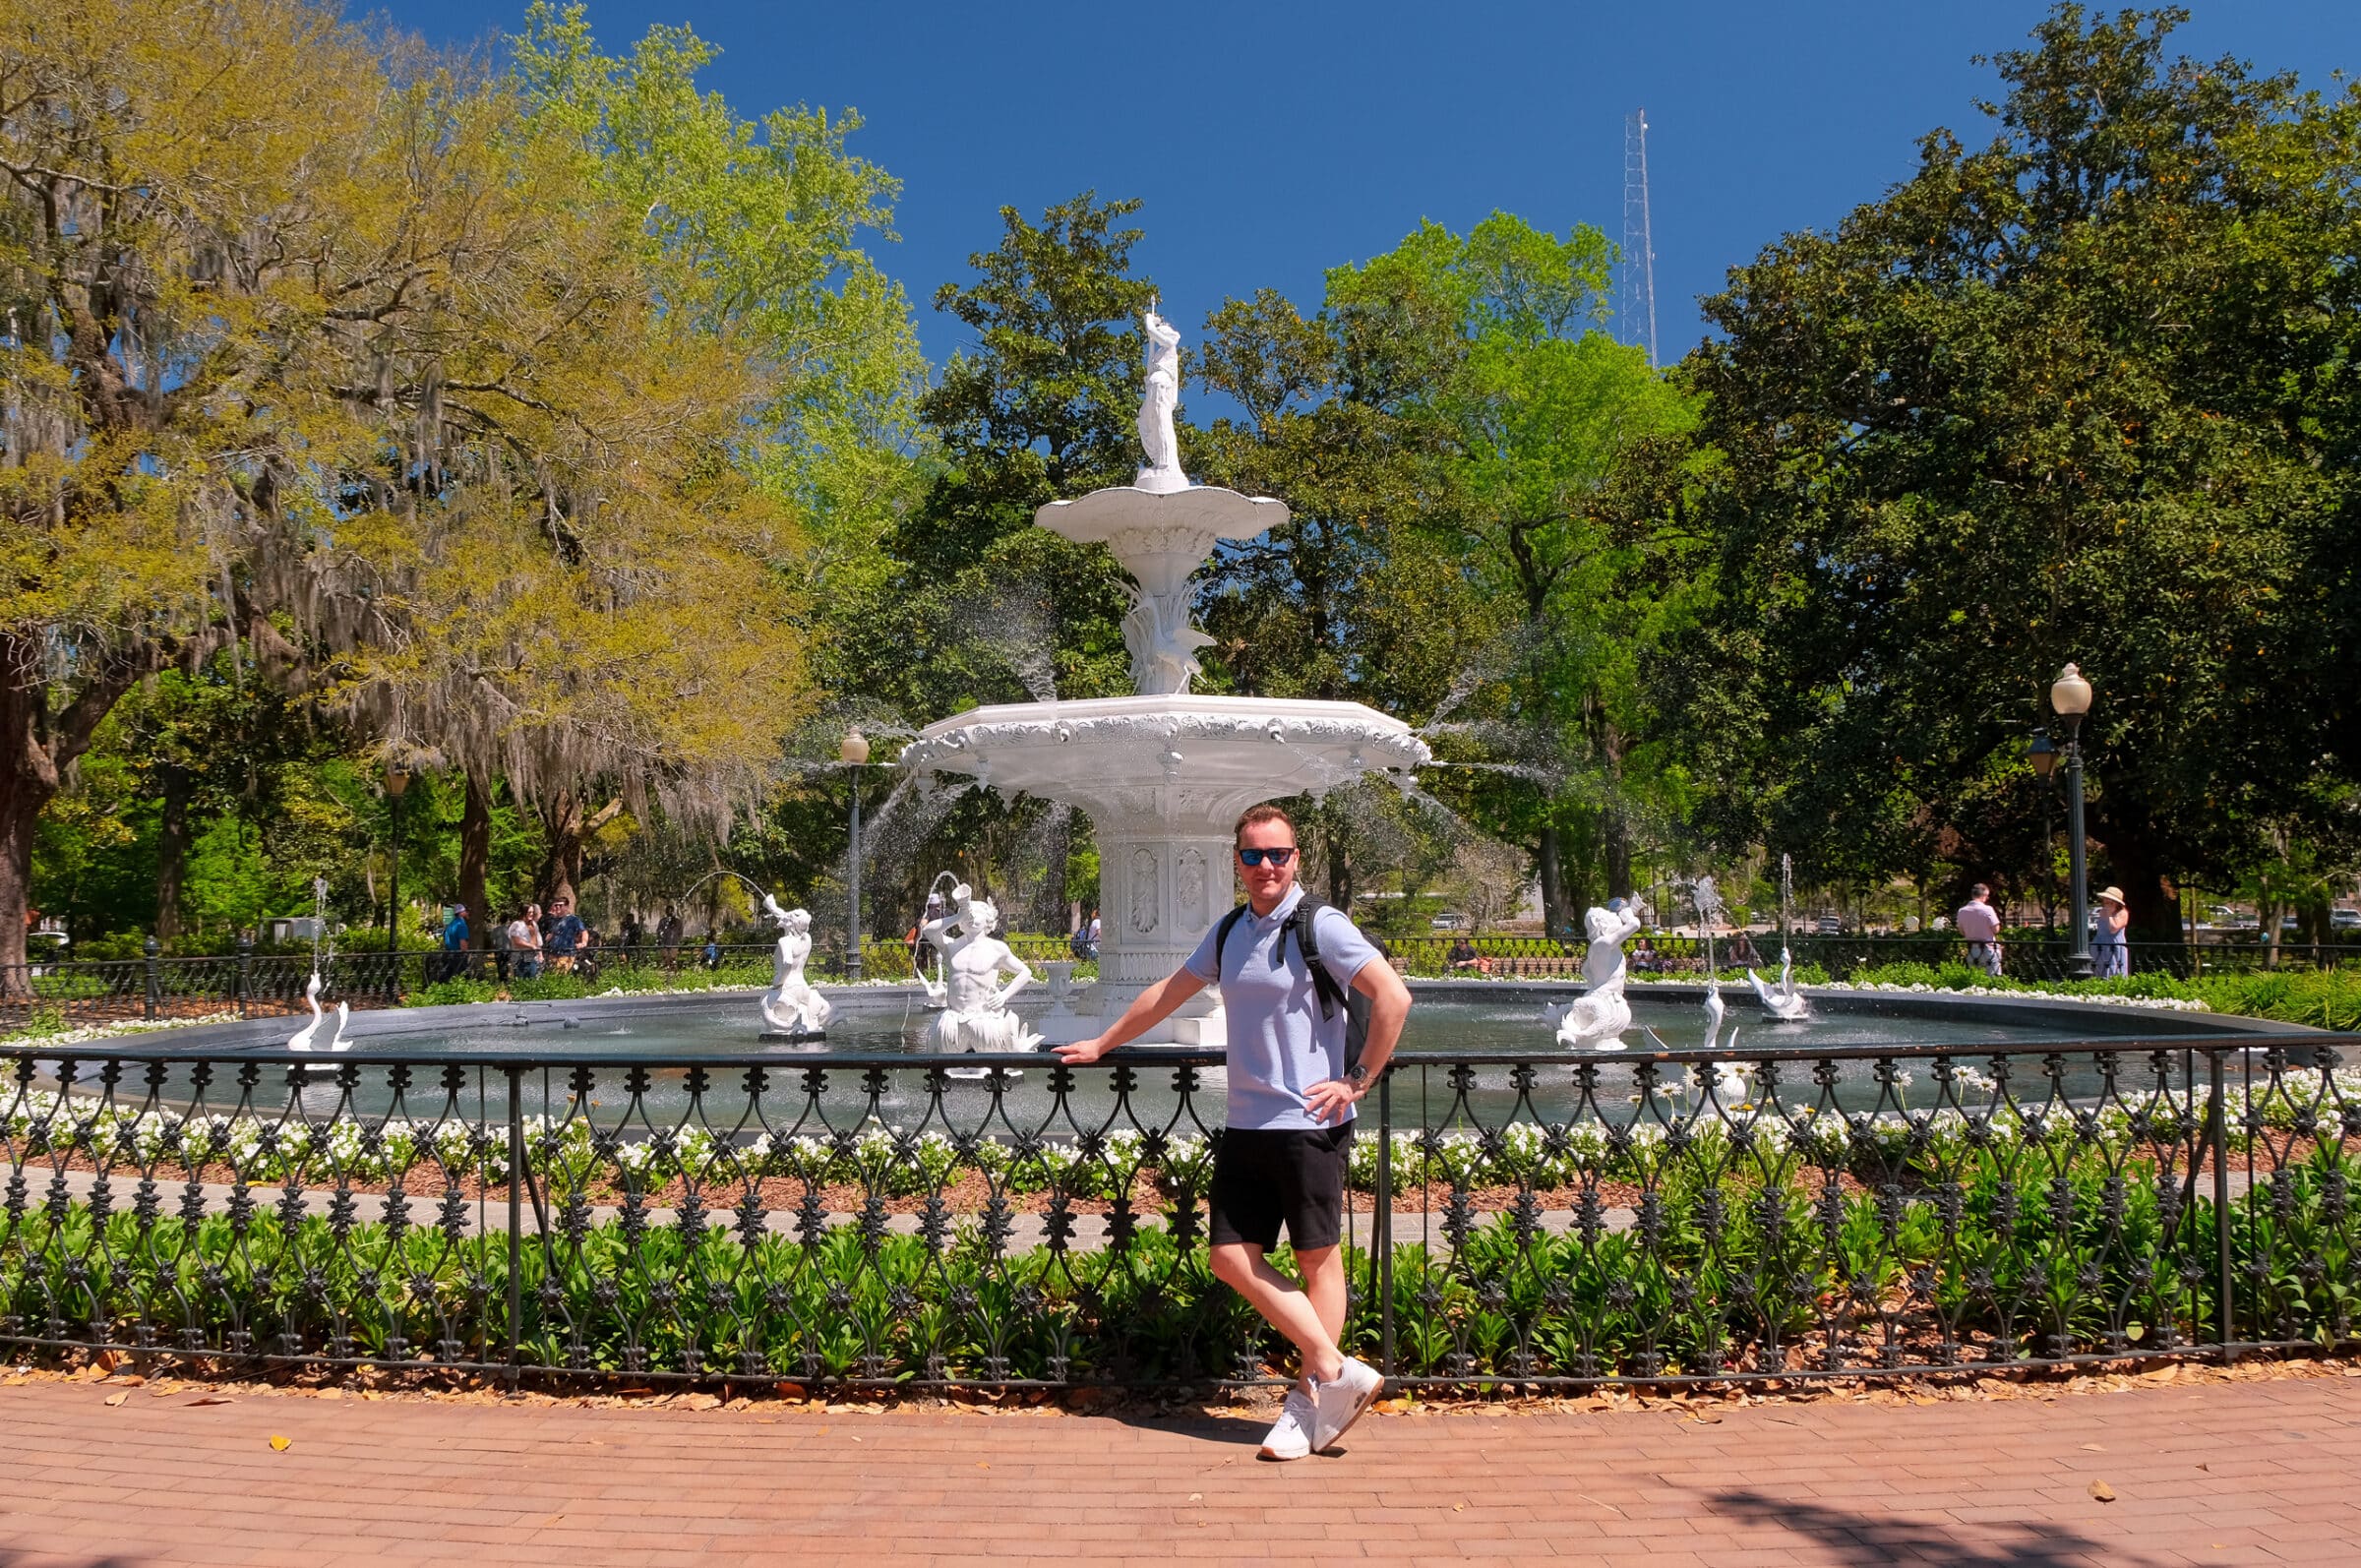 Forsyth Park Fountain | Wat te doen + tips voor Savannah, Georgia